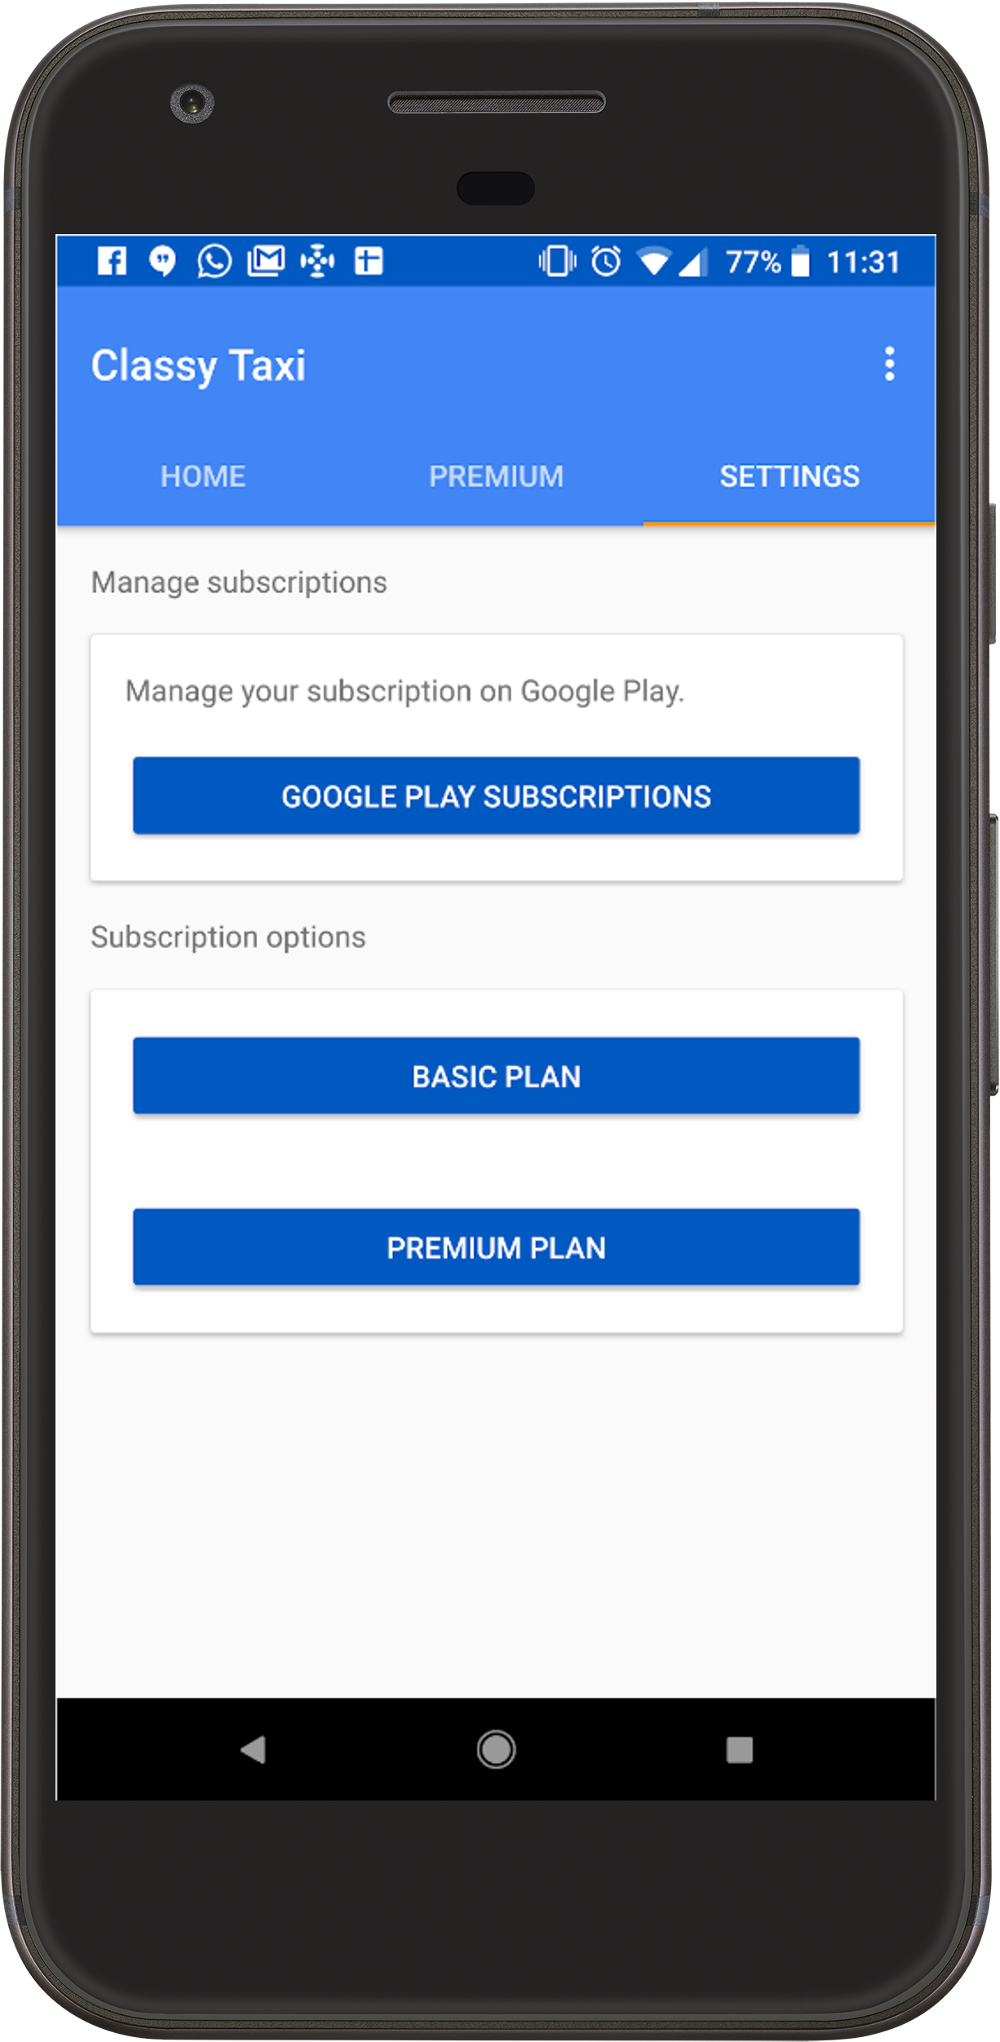 Le bouton Abonnements Google Play illustré sur cette image est un exemple de lien permettant de gérer les abonnements.